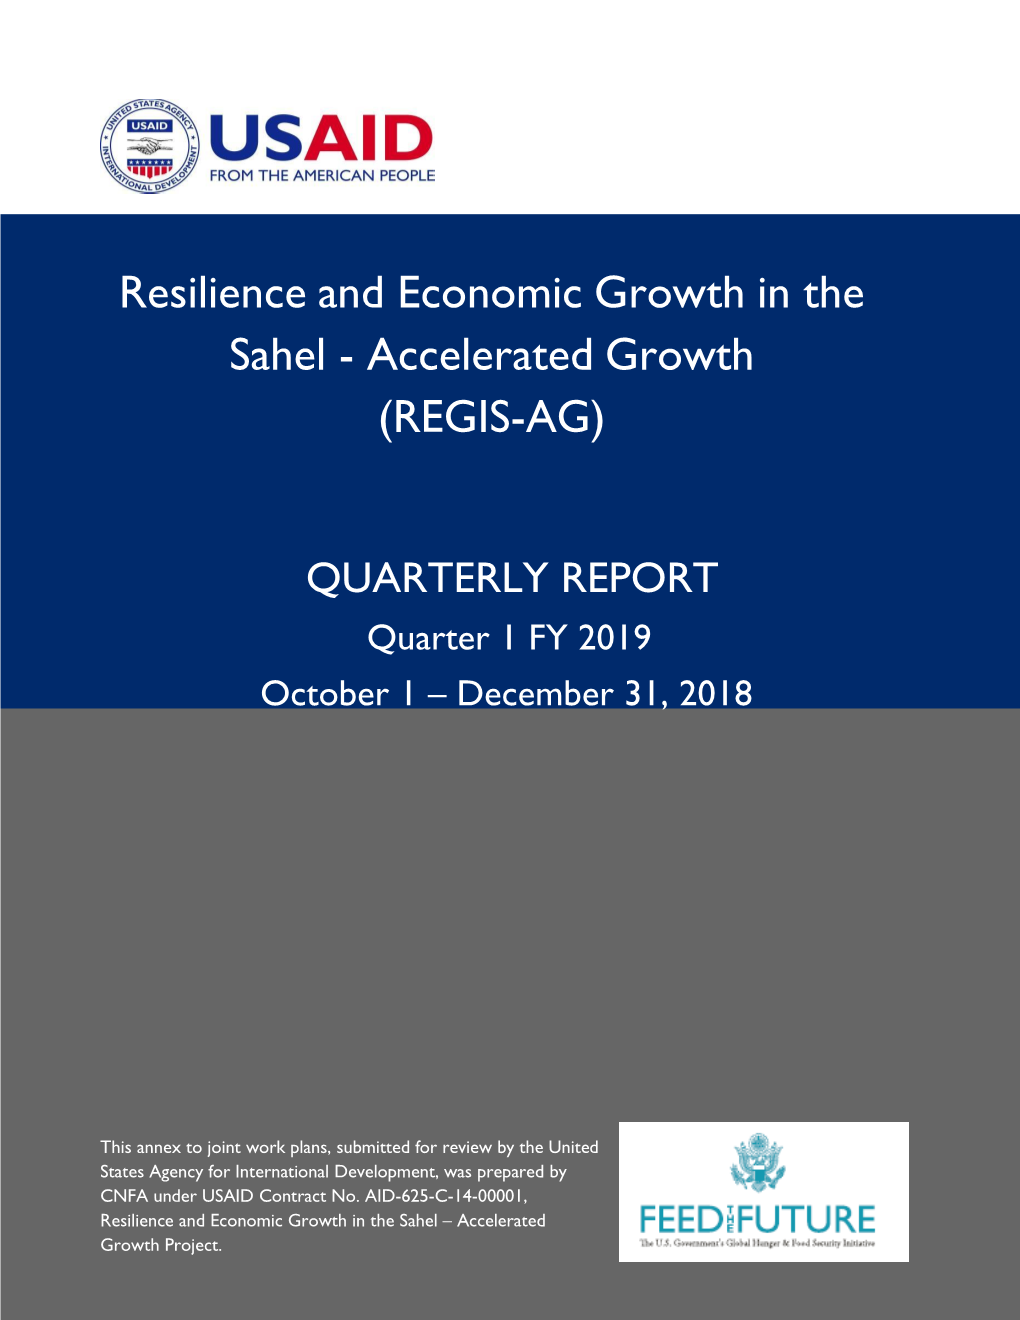 REGIS-AG, Quarterly Report, FY2019 Quarter 1